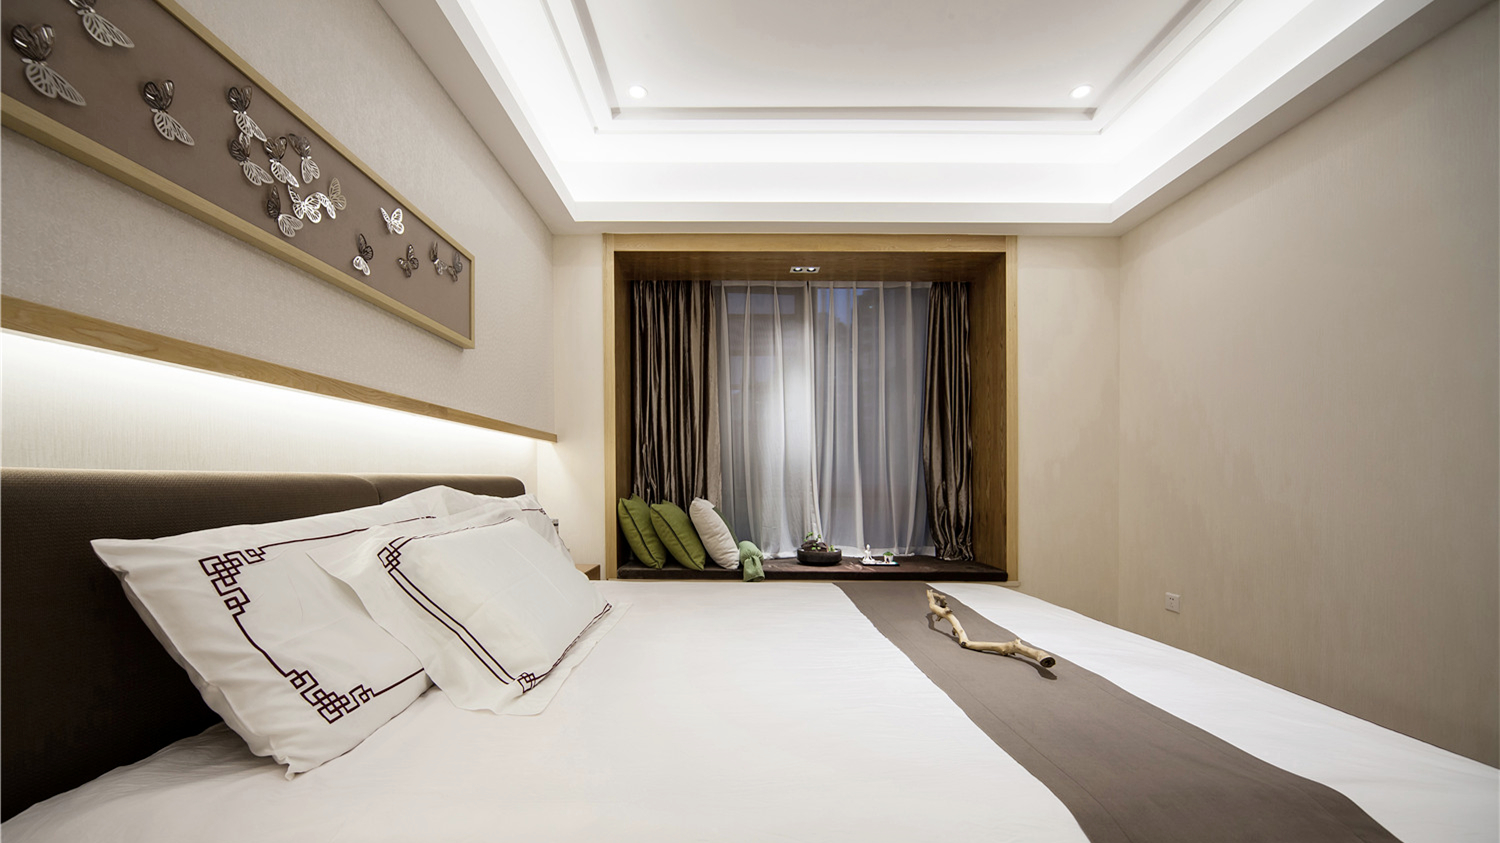 新东方 新中式 现代中式 天汇设计 游小话 卧室图片来自福建天汇设计工程有限公司在THD-天汇设计《清风韵》的分享